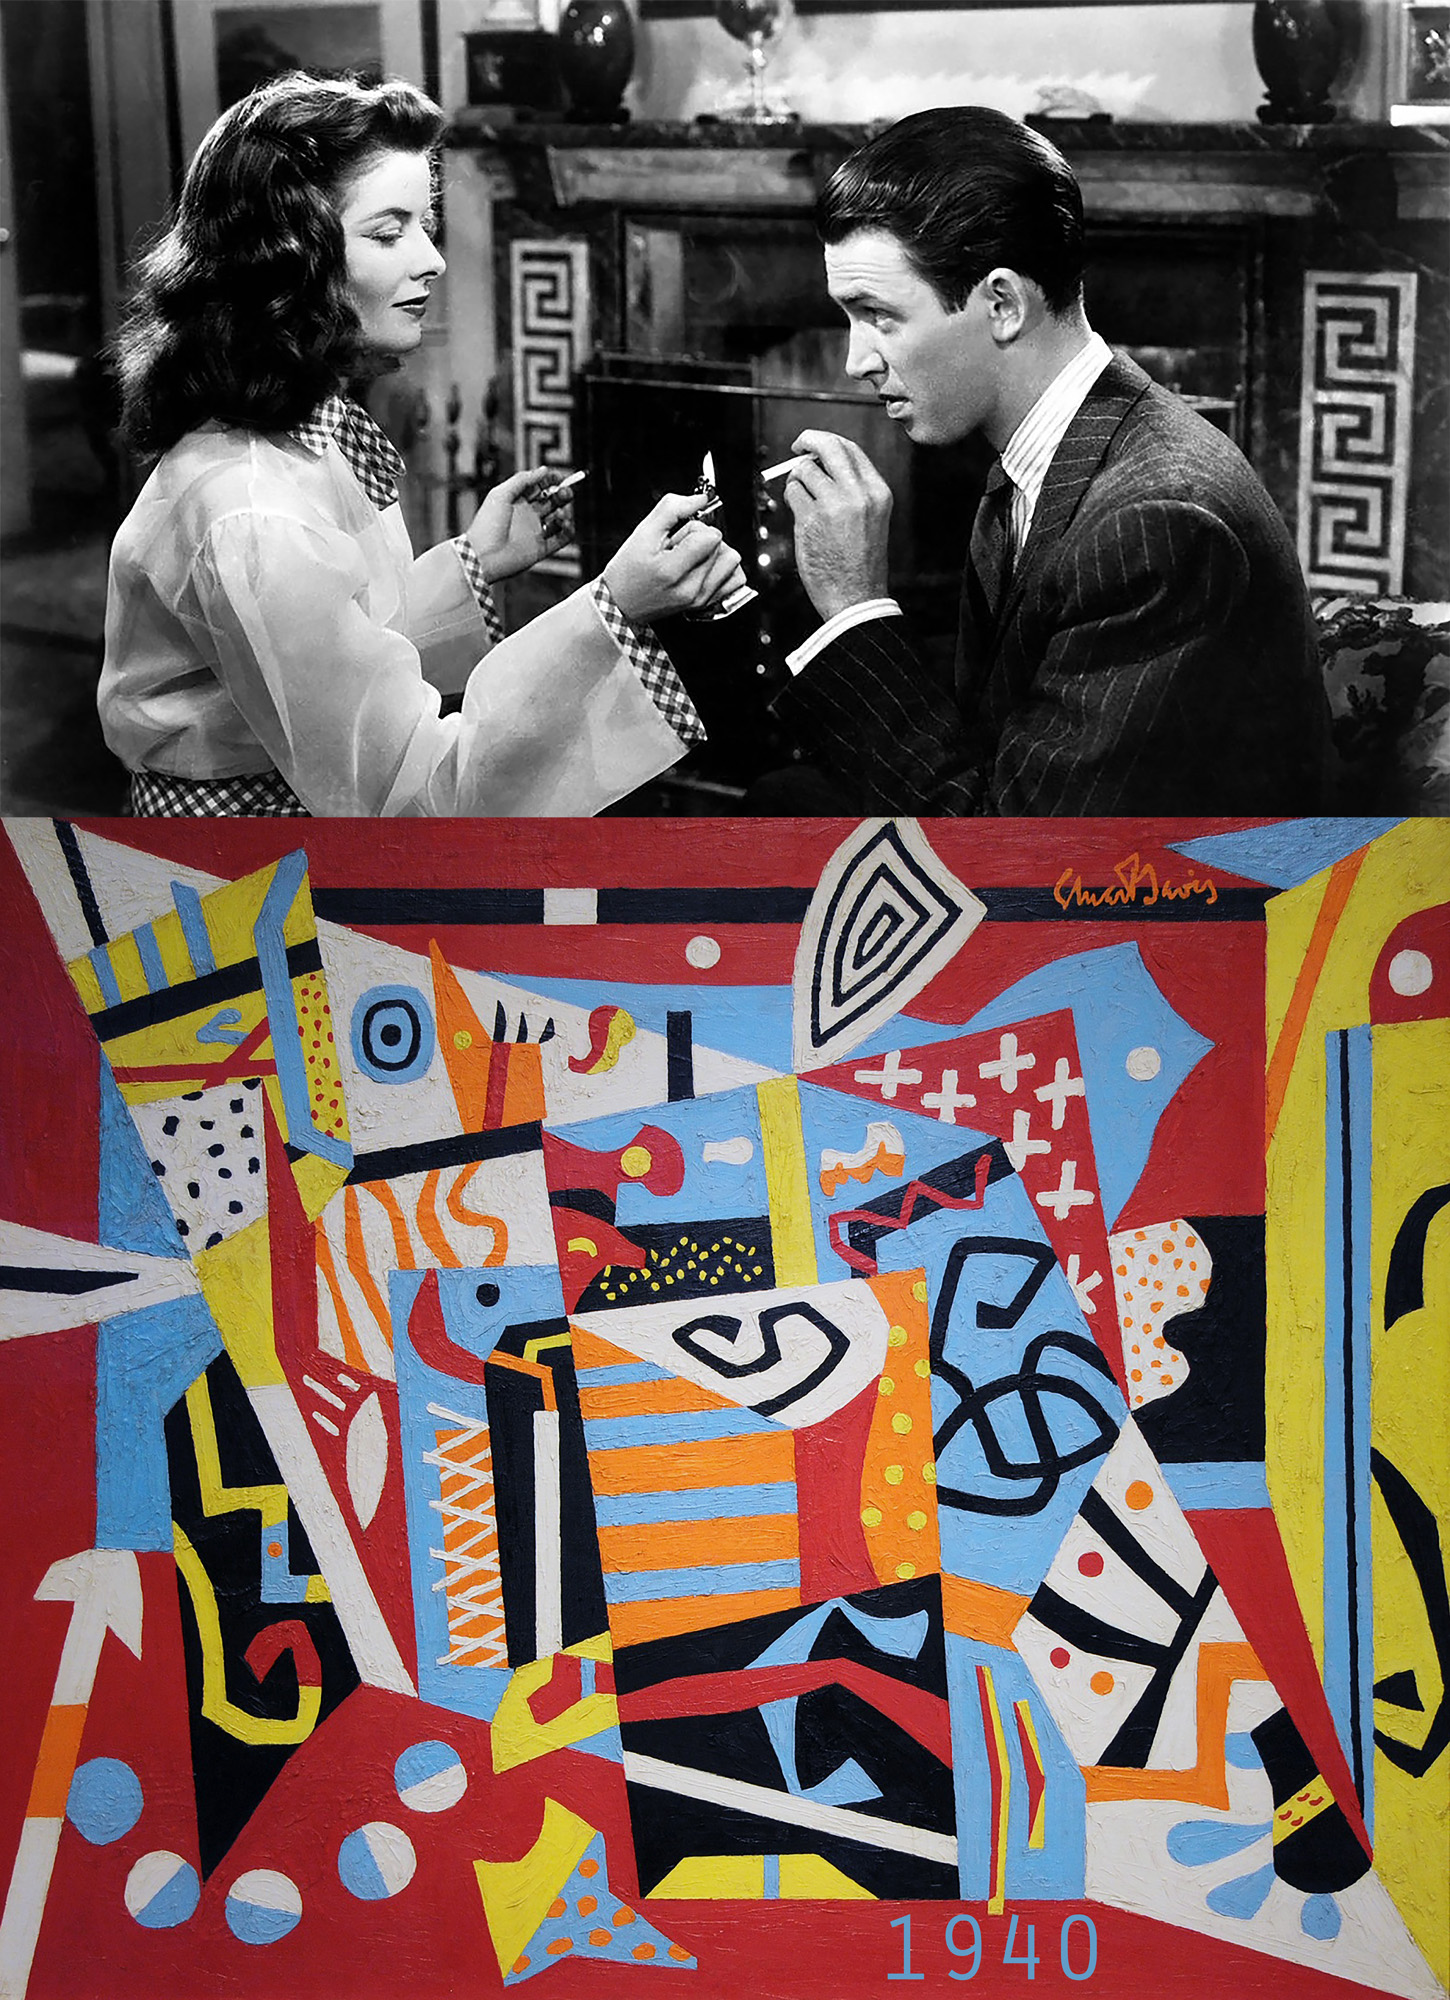 1940 – The Philadelphia Story / Stuart Davis, "Hot Still-Scape for Six Colors - 7th Avenue Style" - by Bonnie Lautenberg